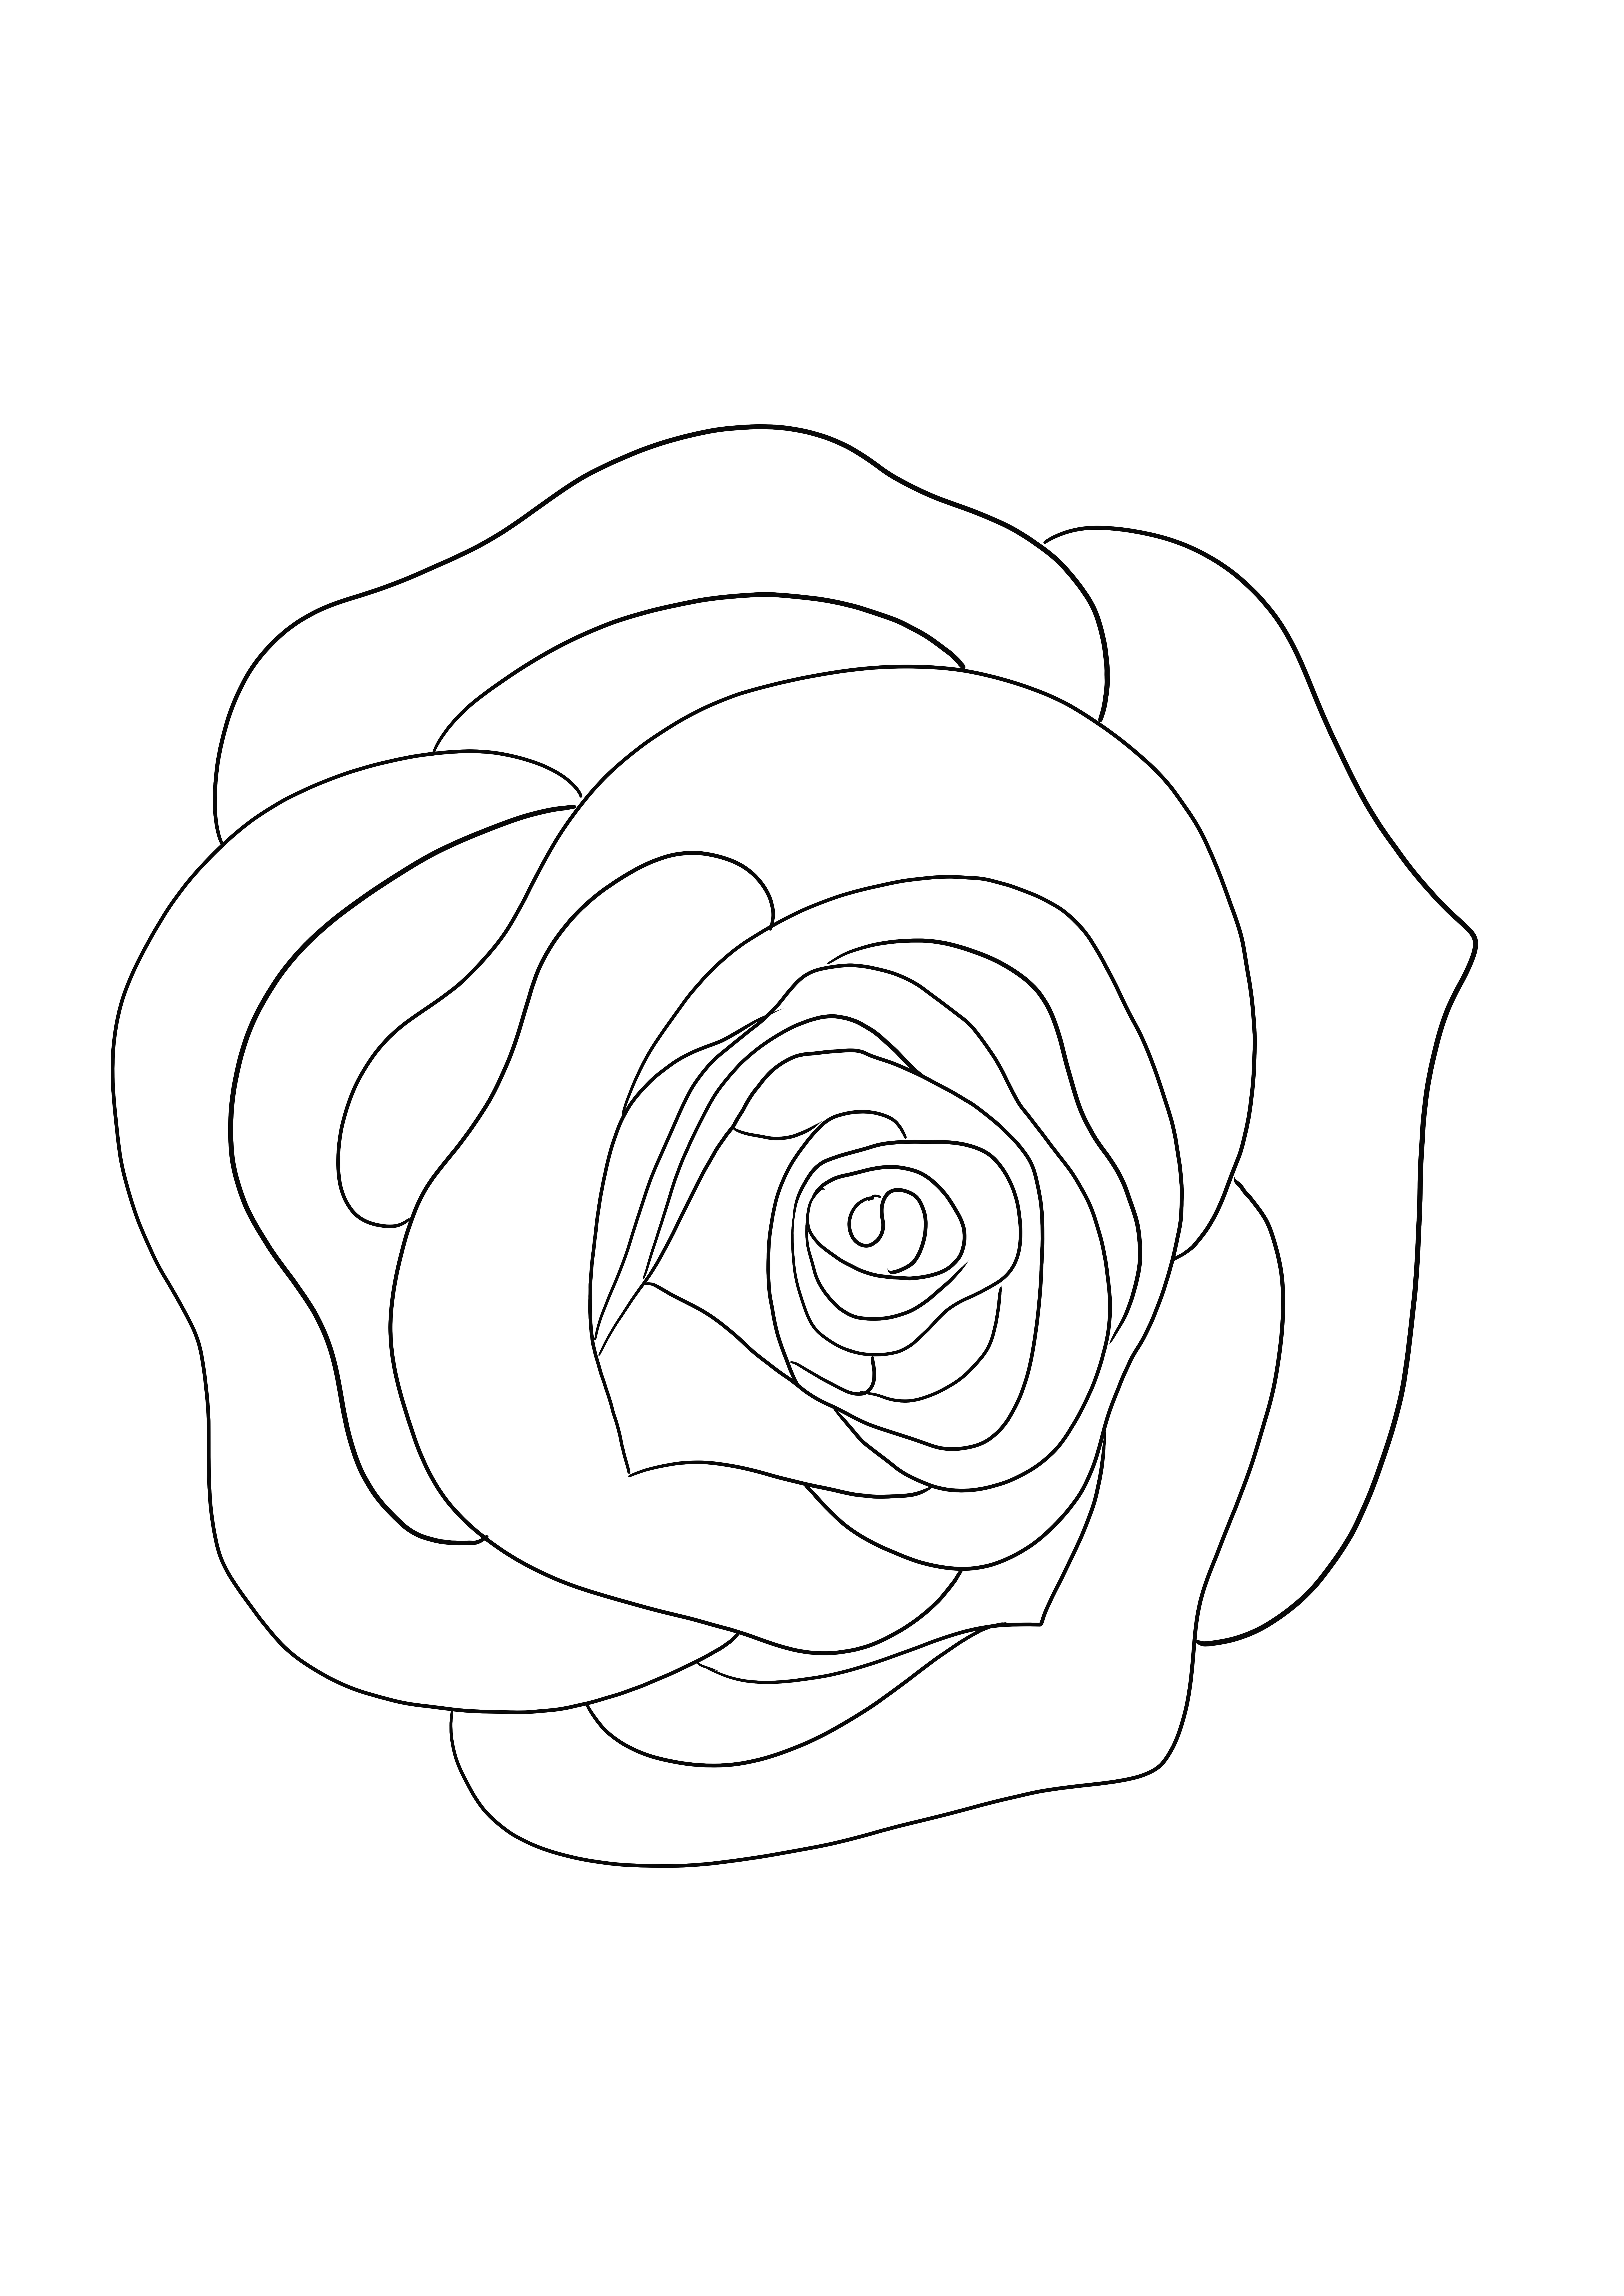 Folha de colorir A Simple Rose grátis para baixar ou imprimir para crianças